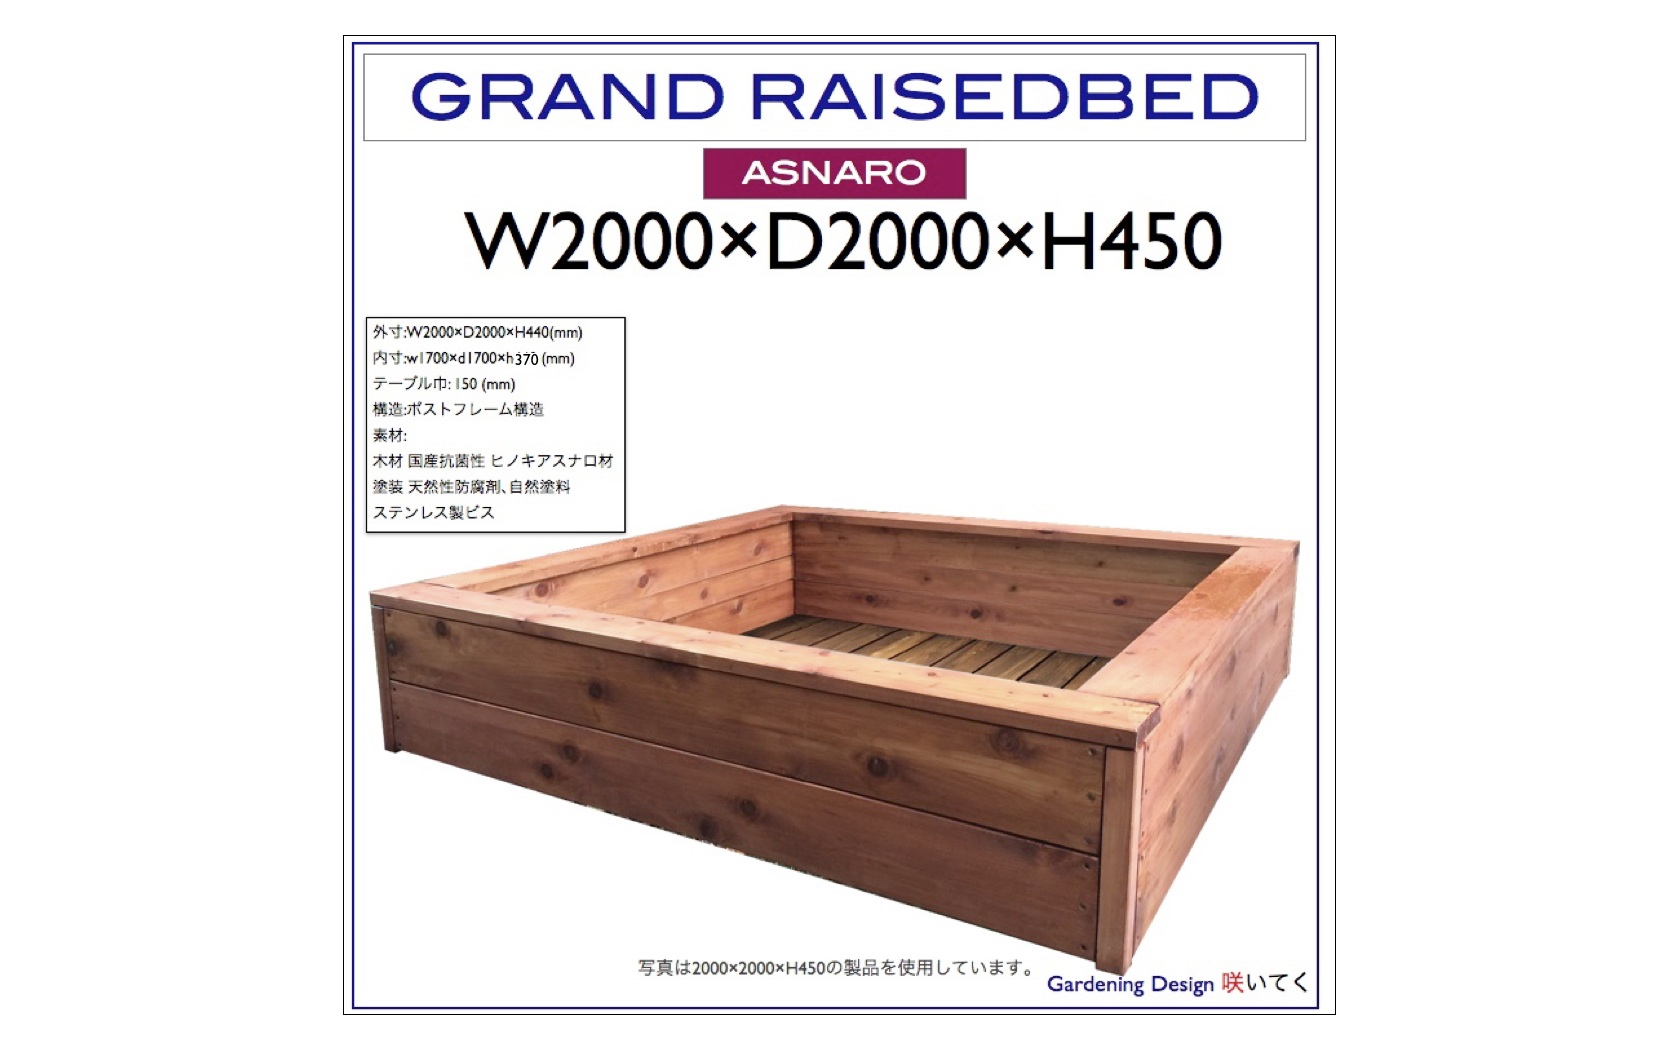 レイズドベッド 製品 大型 木製 フラワーベッドベース